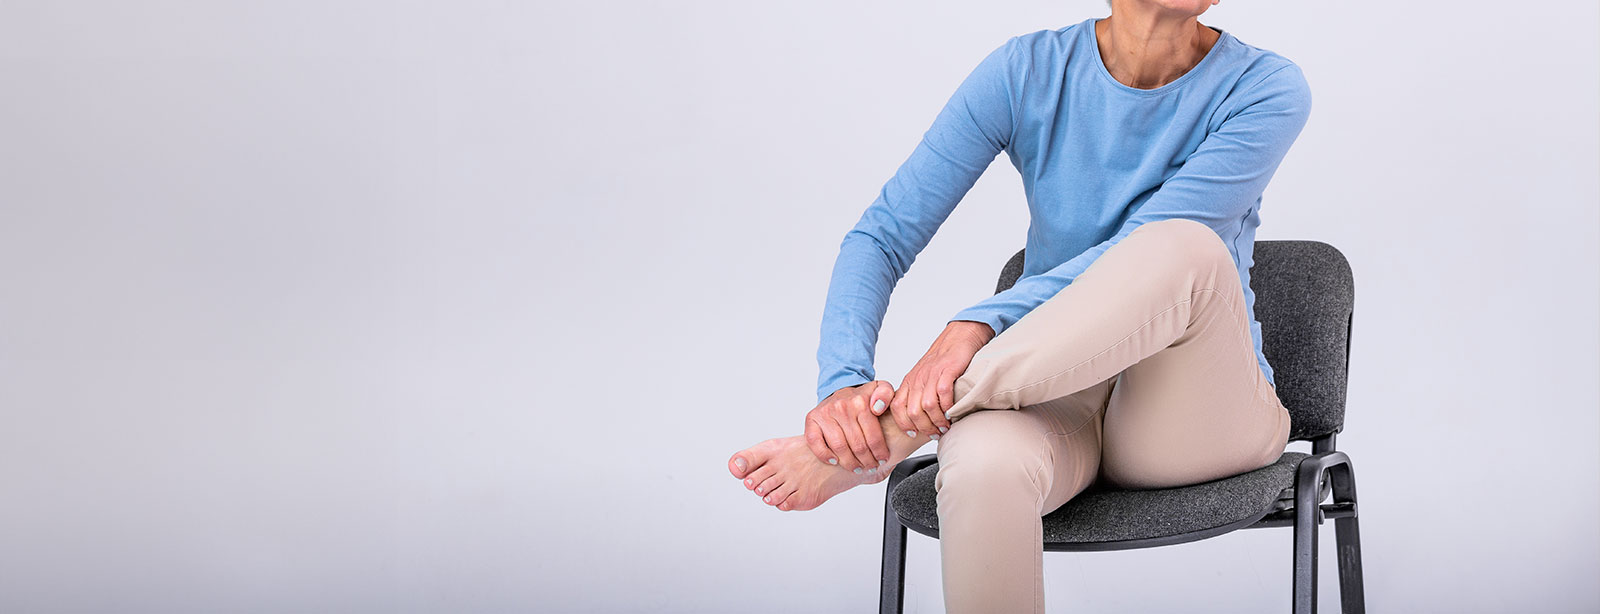 Por que suas pernas doem ao se levantar depois de estar sentado?